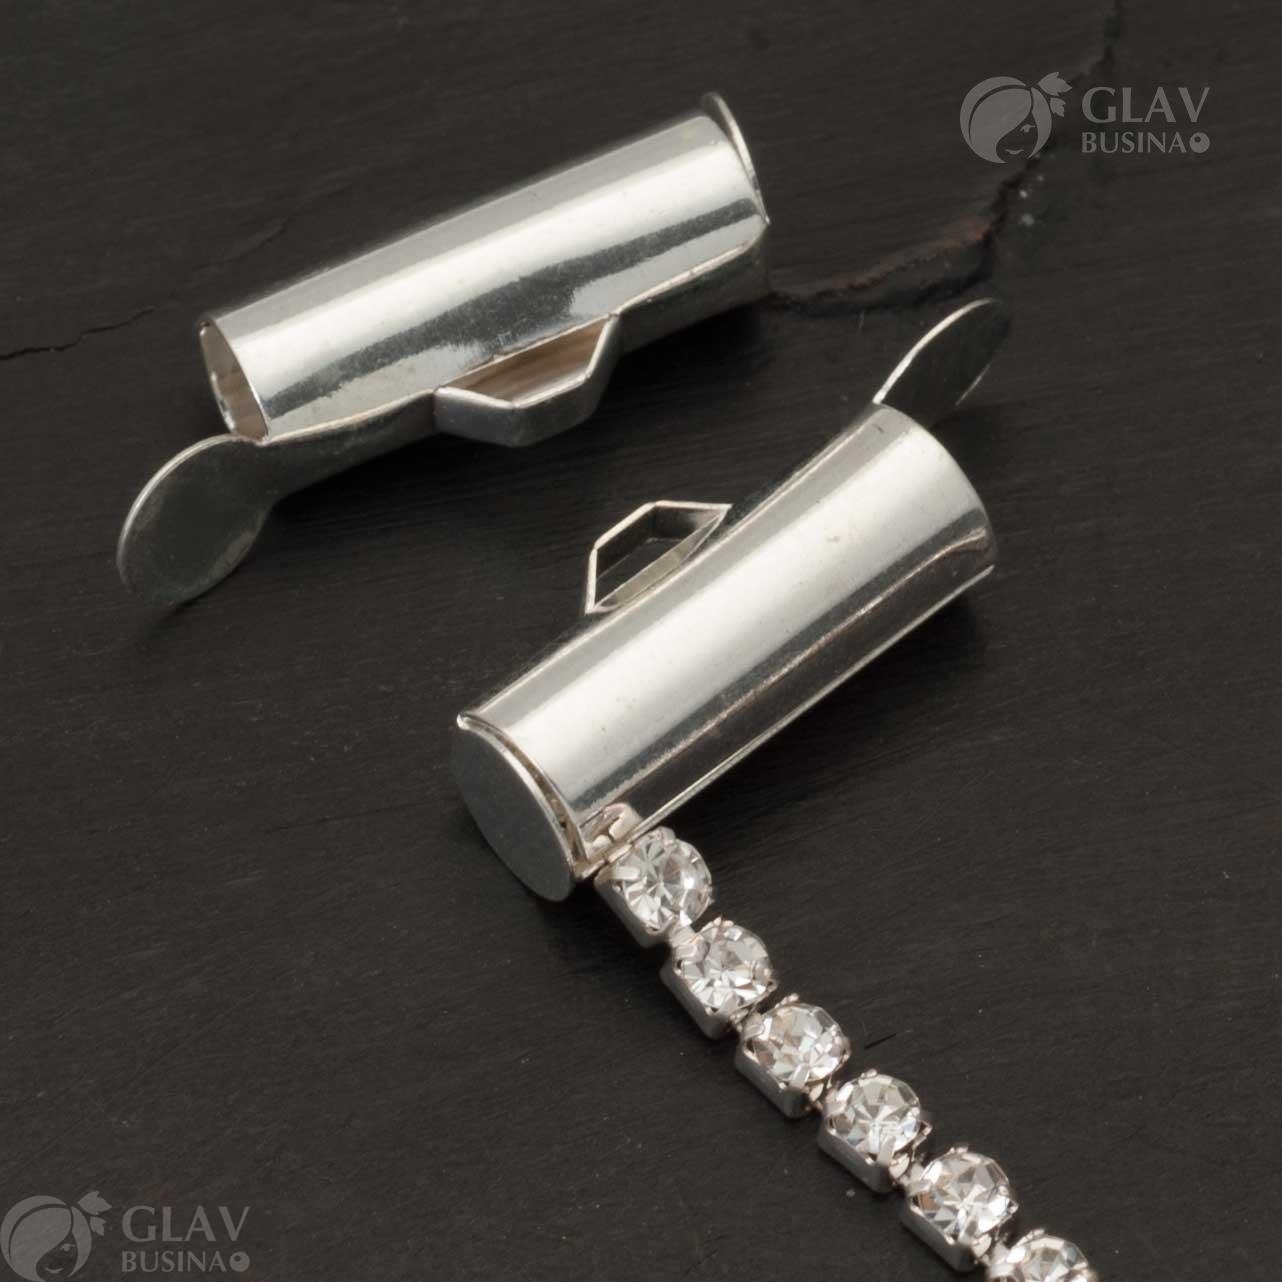 Концевики-трубочки для стразовой цепочки из латуни размером 13х4мм с отверстием 1х2.5мм, окрашены в серебряный цвет. Идеальное решение для создания надежных и качественных украшений.